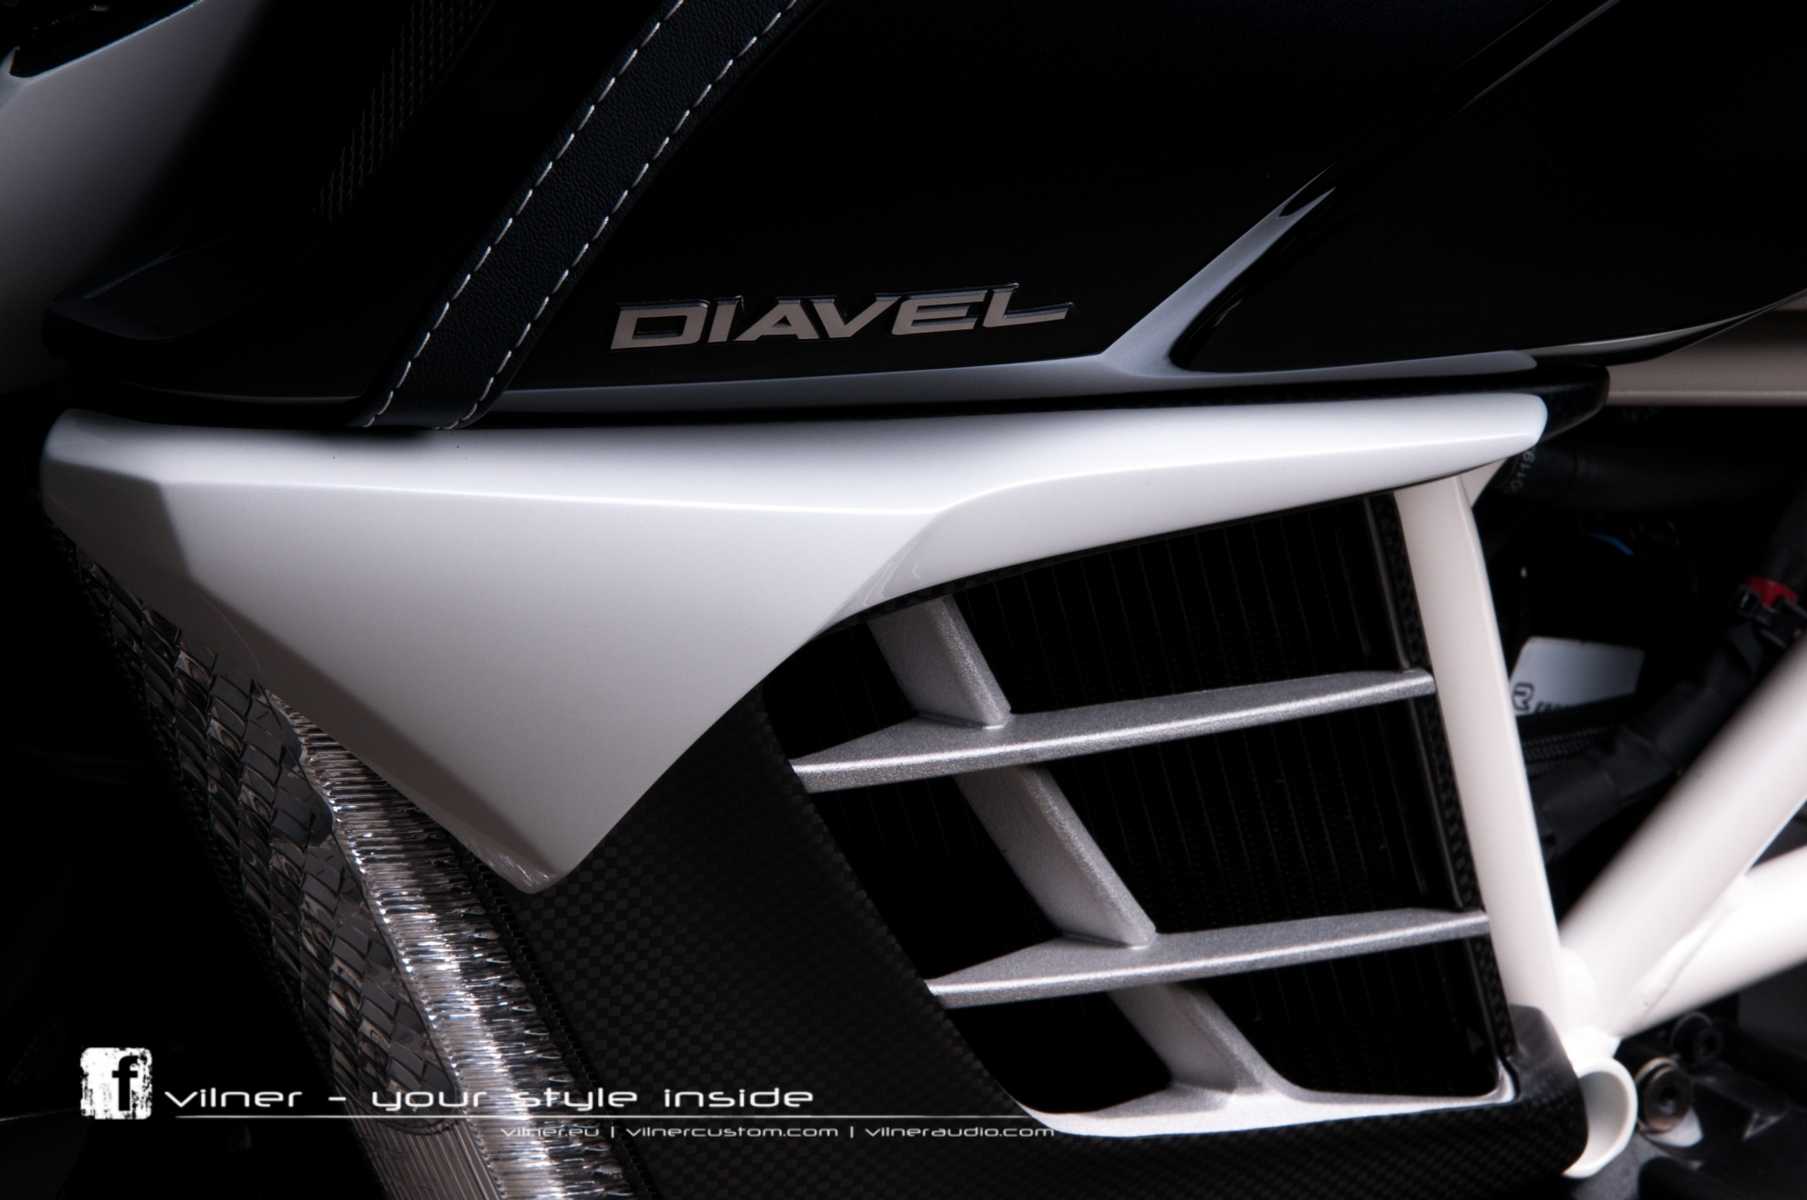 Ducati Diavel AMG by Vilner 9